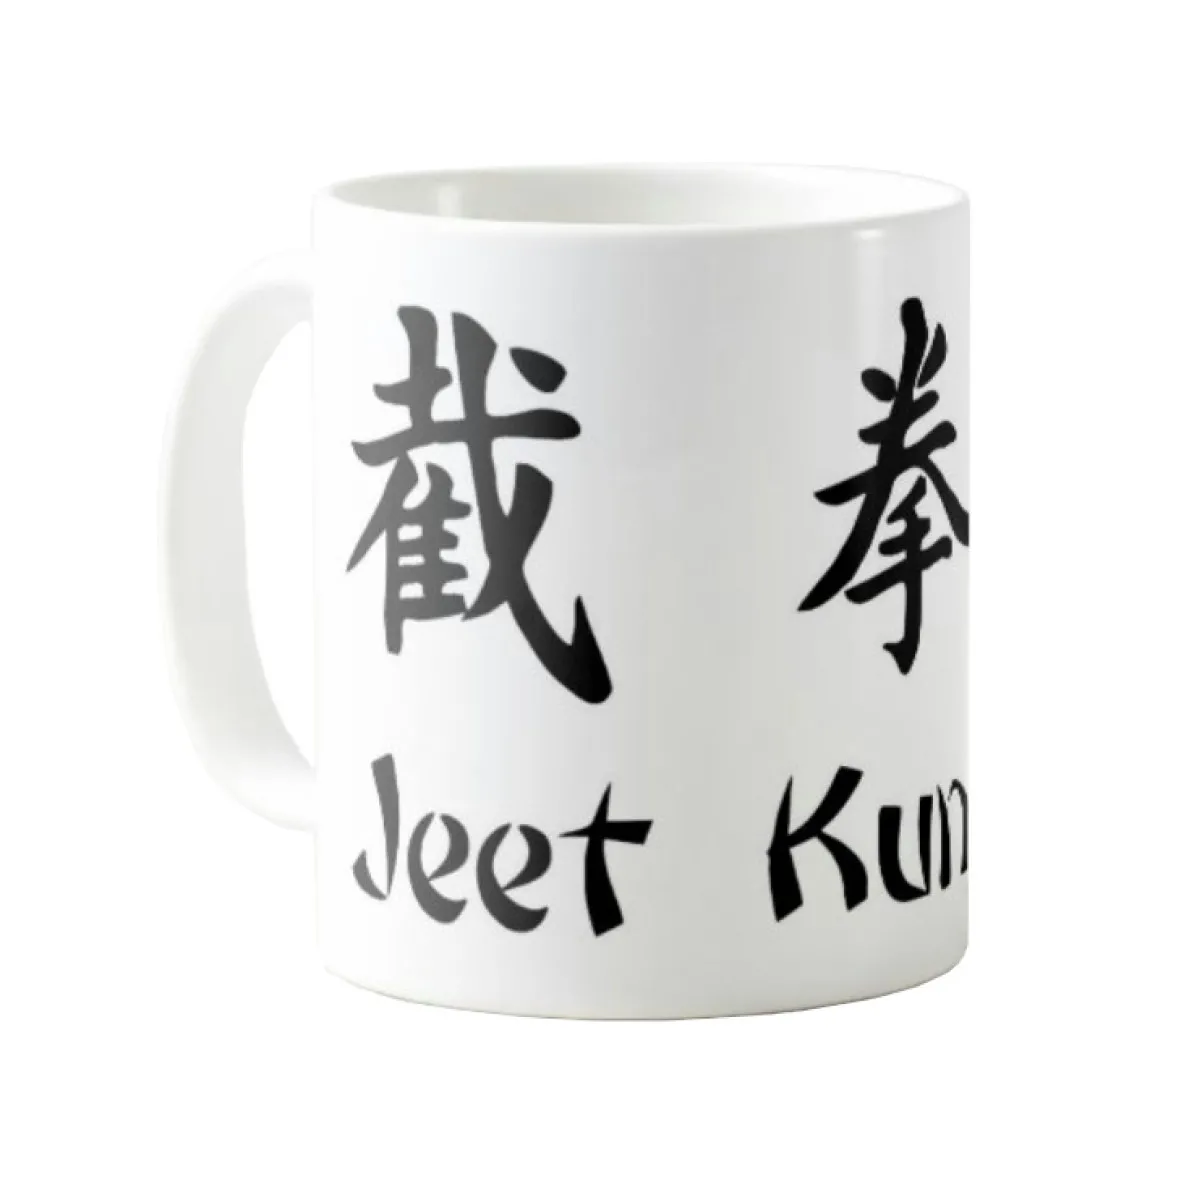 Jeet Kune Do cup